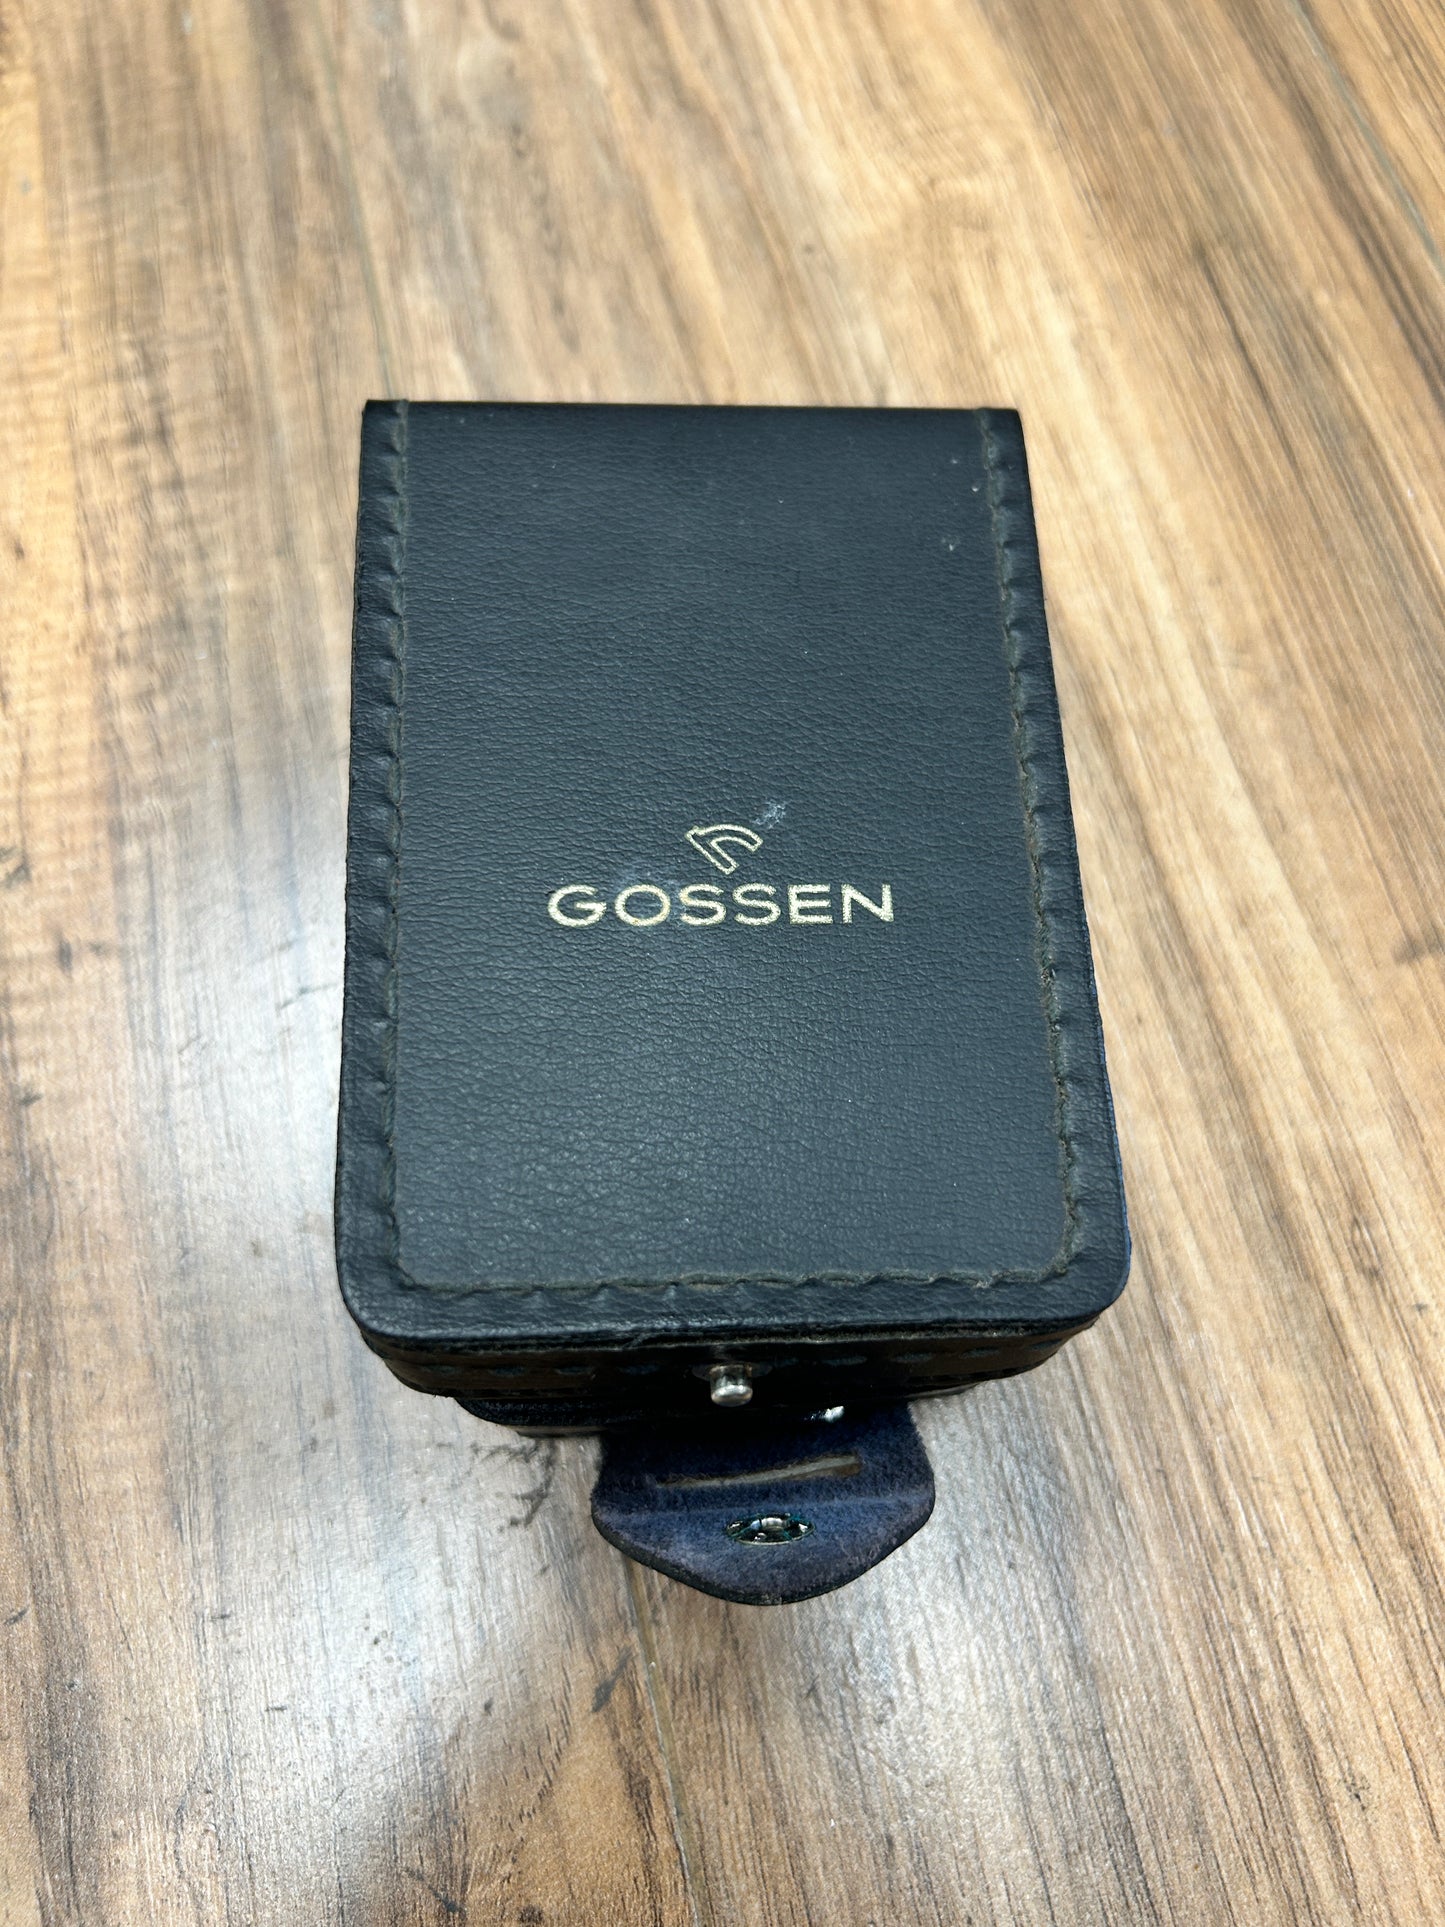 Gossen Luna-Pro F Lightmeter w/ pouch S#7C87977